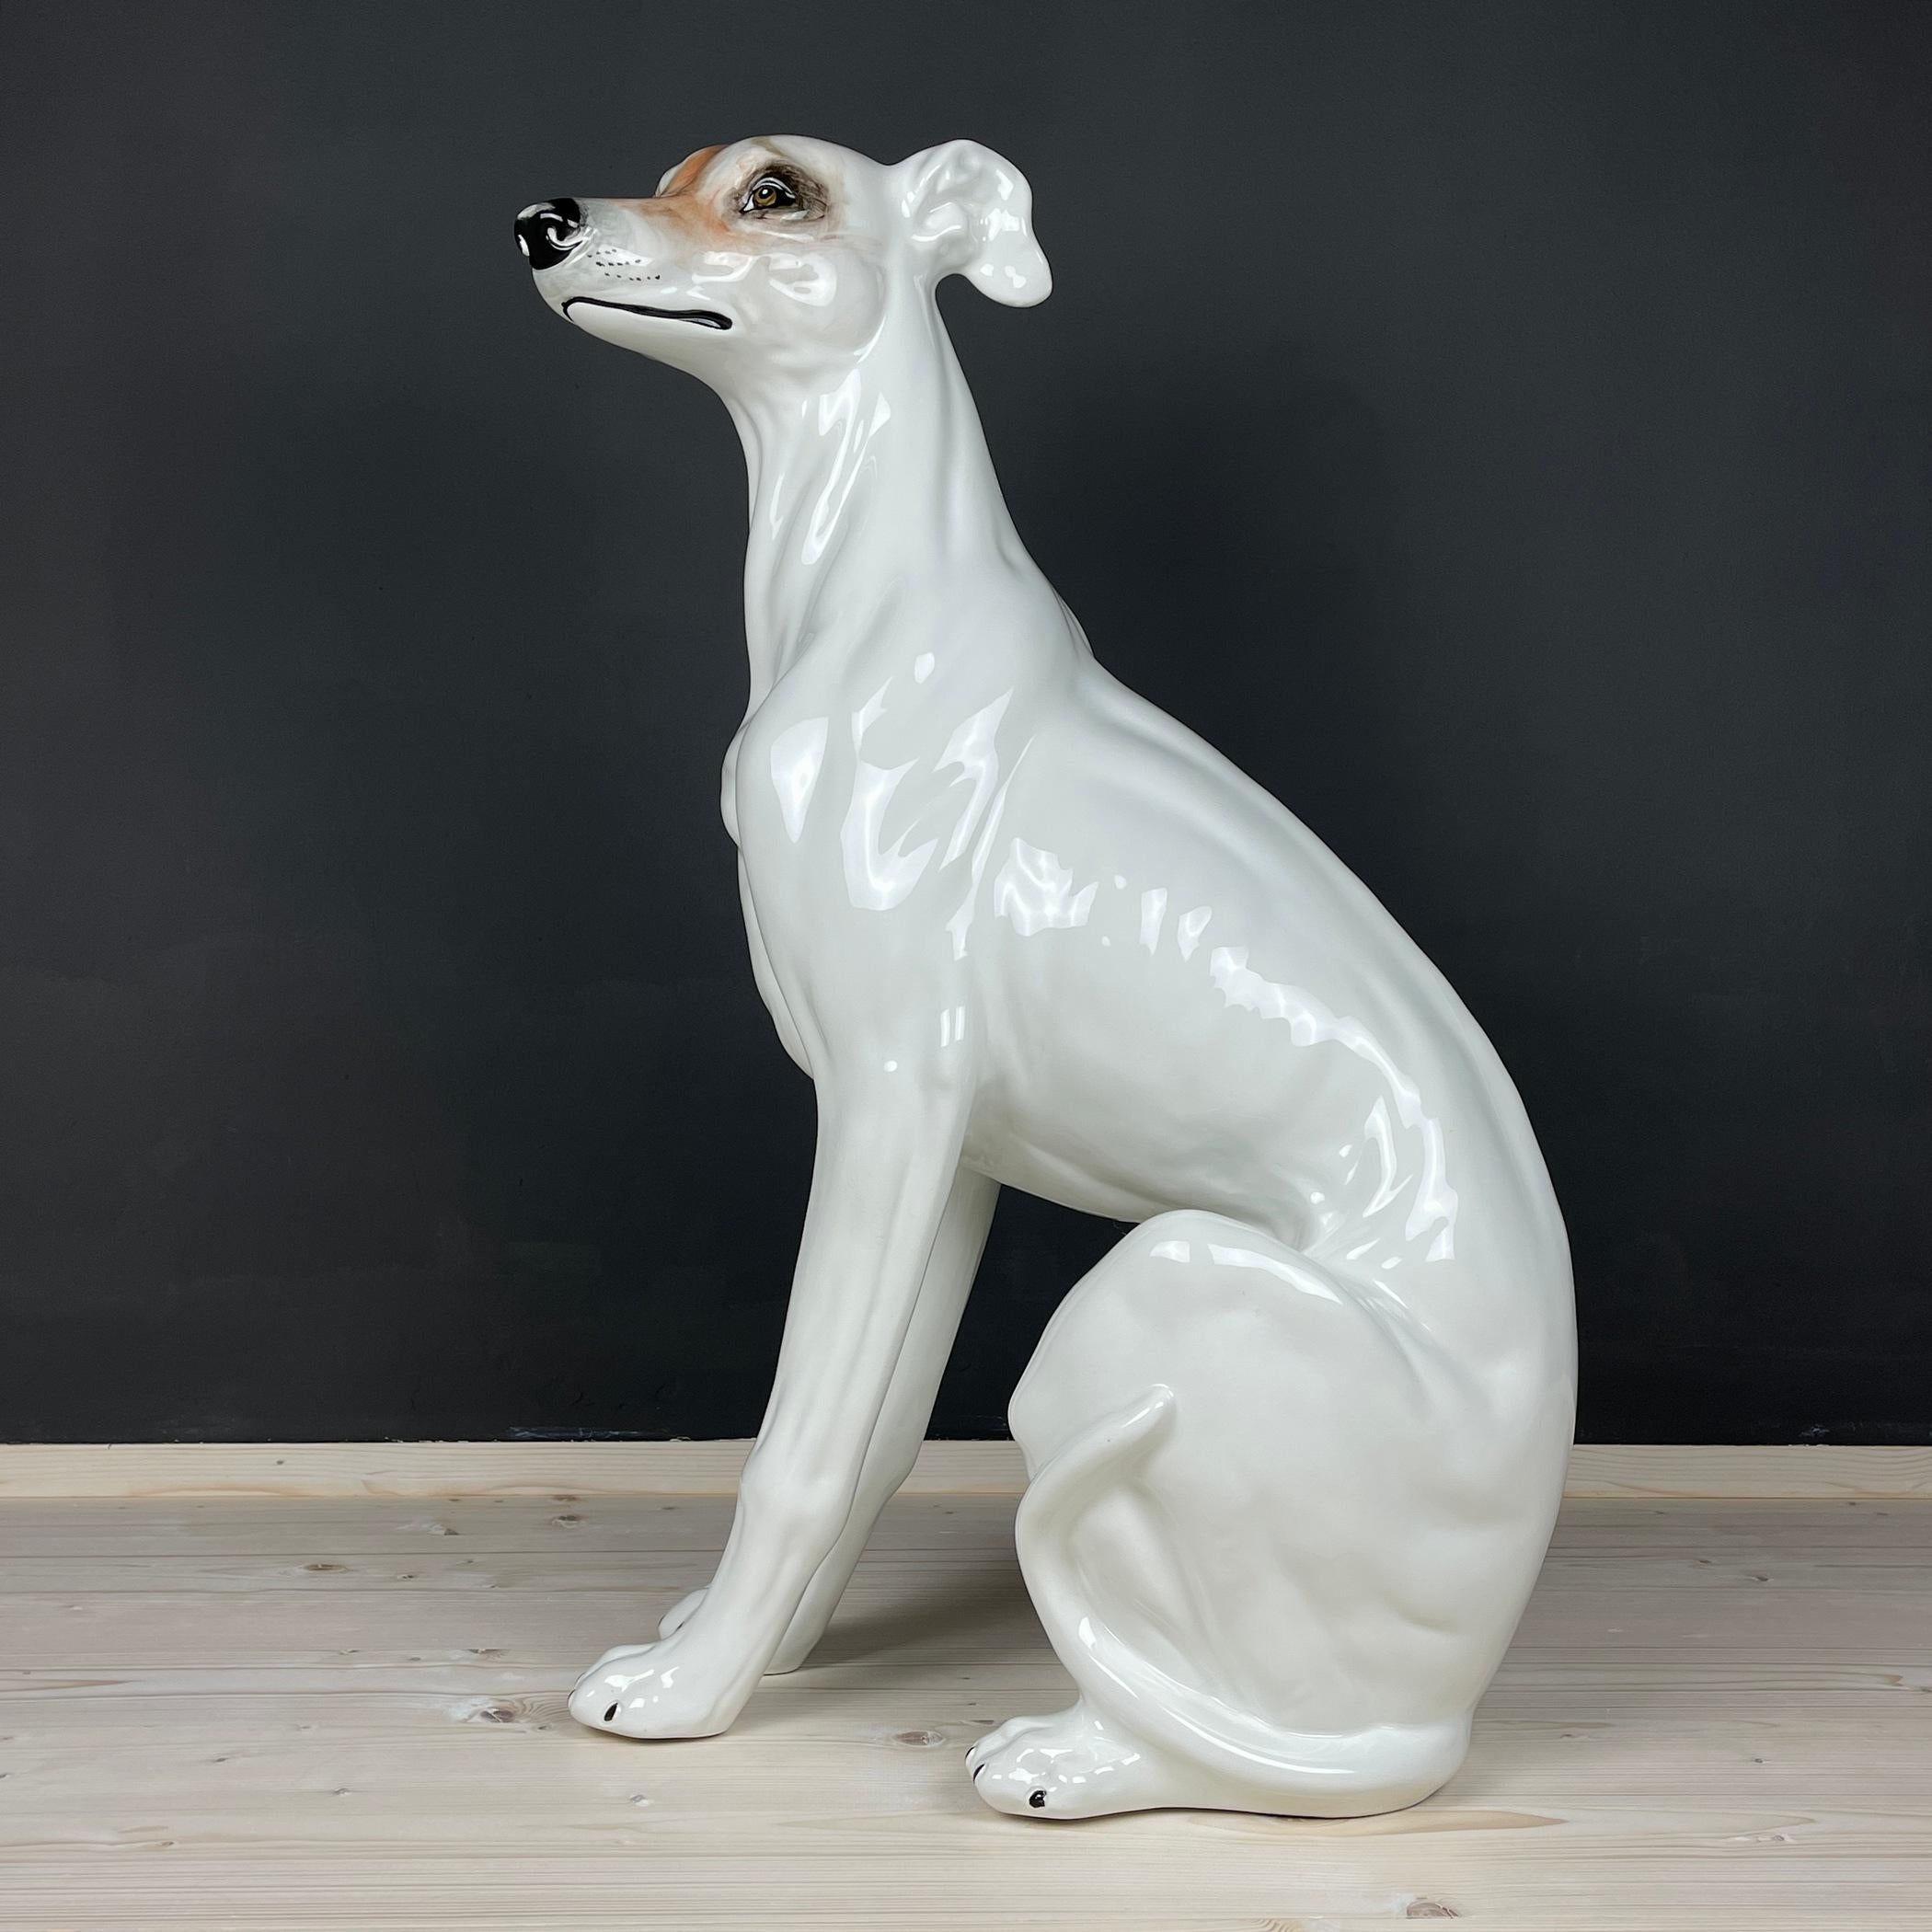 Découvrez l'attrait de l'artisanat italien avec cette étonnante grande sculpture animale en céramique peinte à la main - un chien, un trésor des années 1980 à Bassano, en Italie. Plongez dans la rareté de cette pièce, une sculpture en céramique